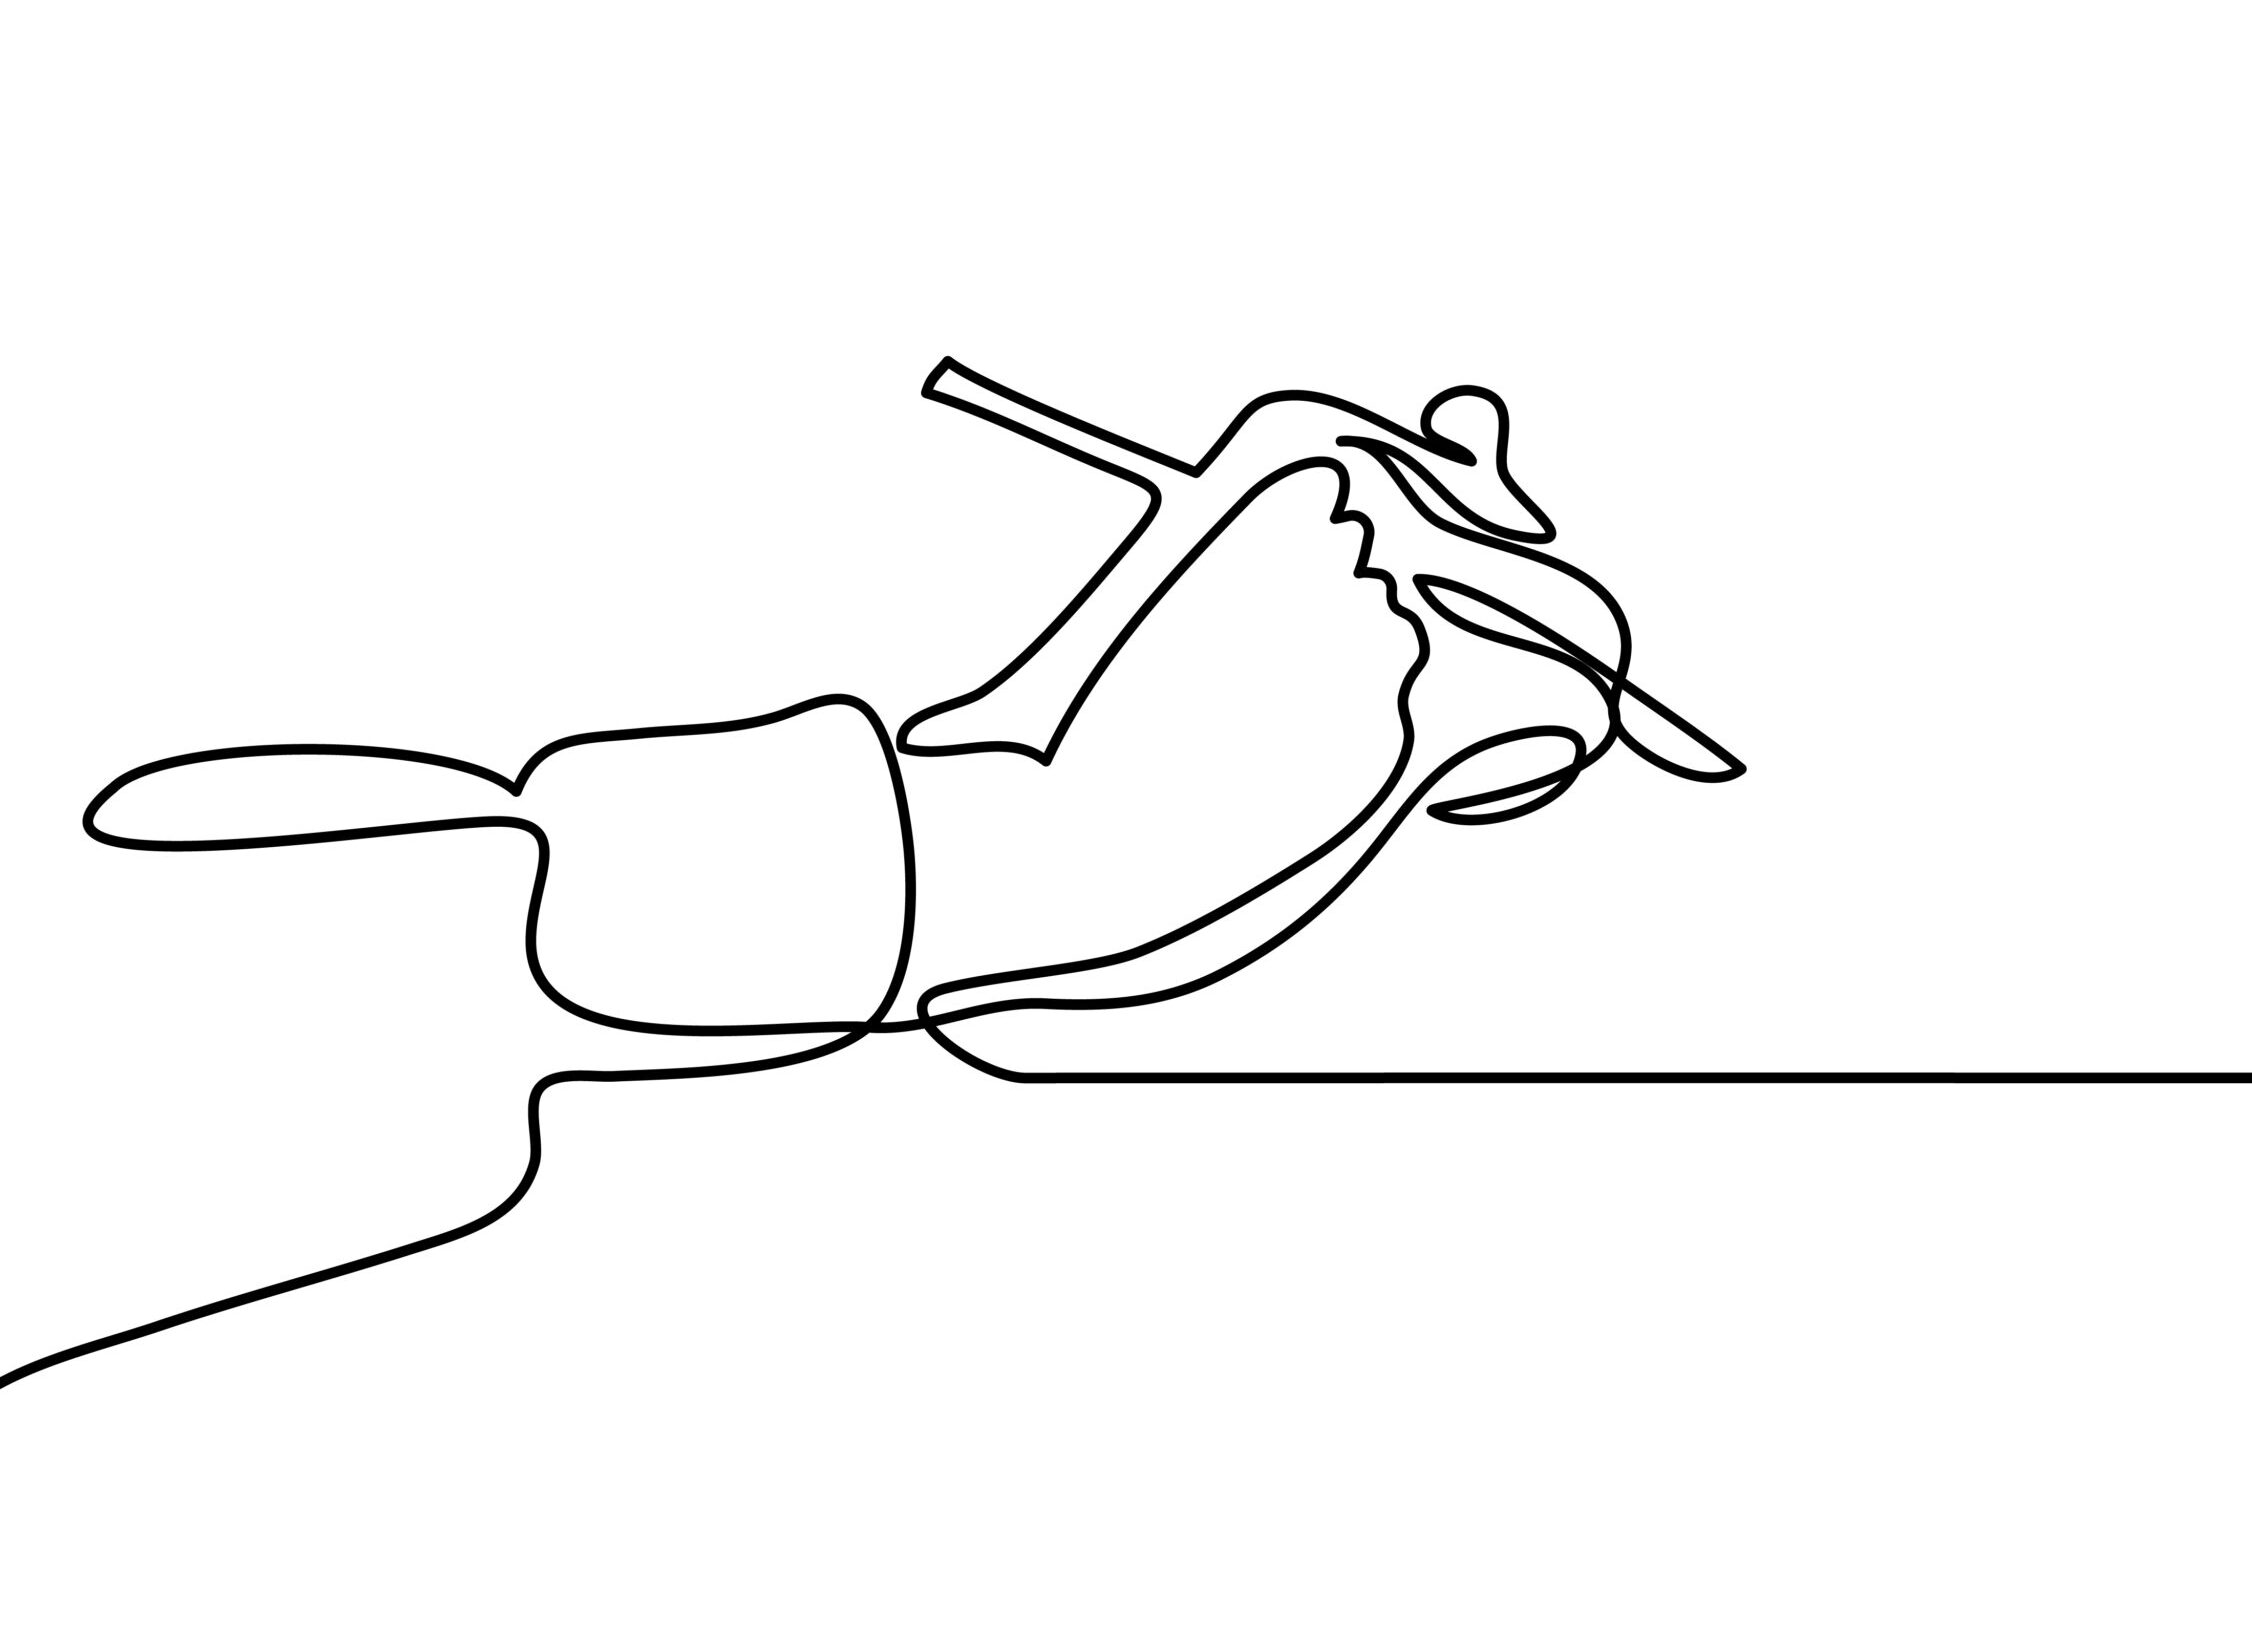 One line drawing (Einlinienzeichnung) von einer Hand, die einen Stift hält